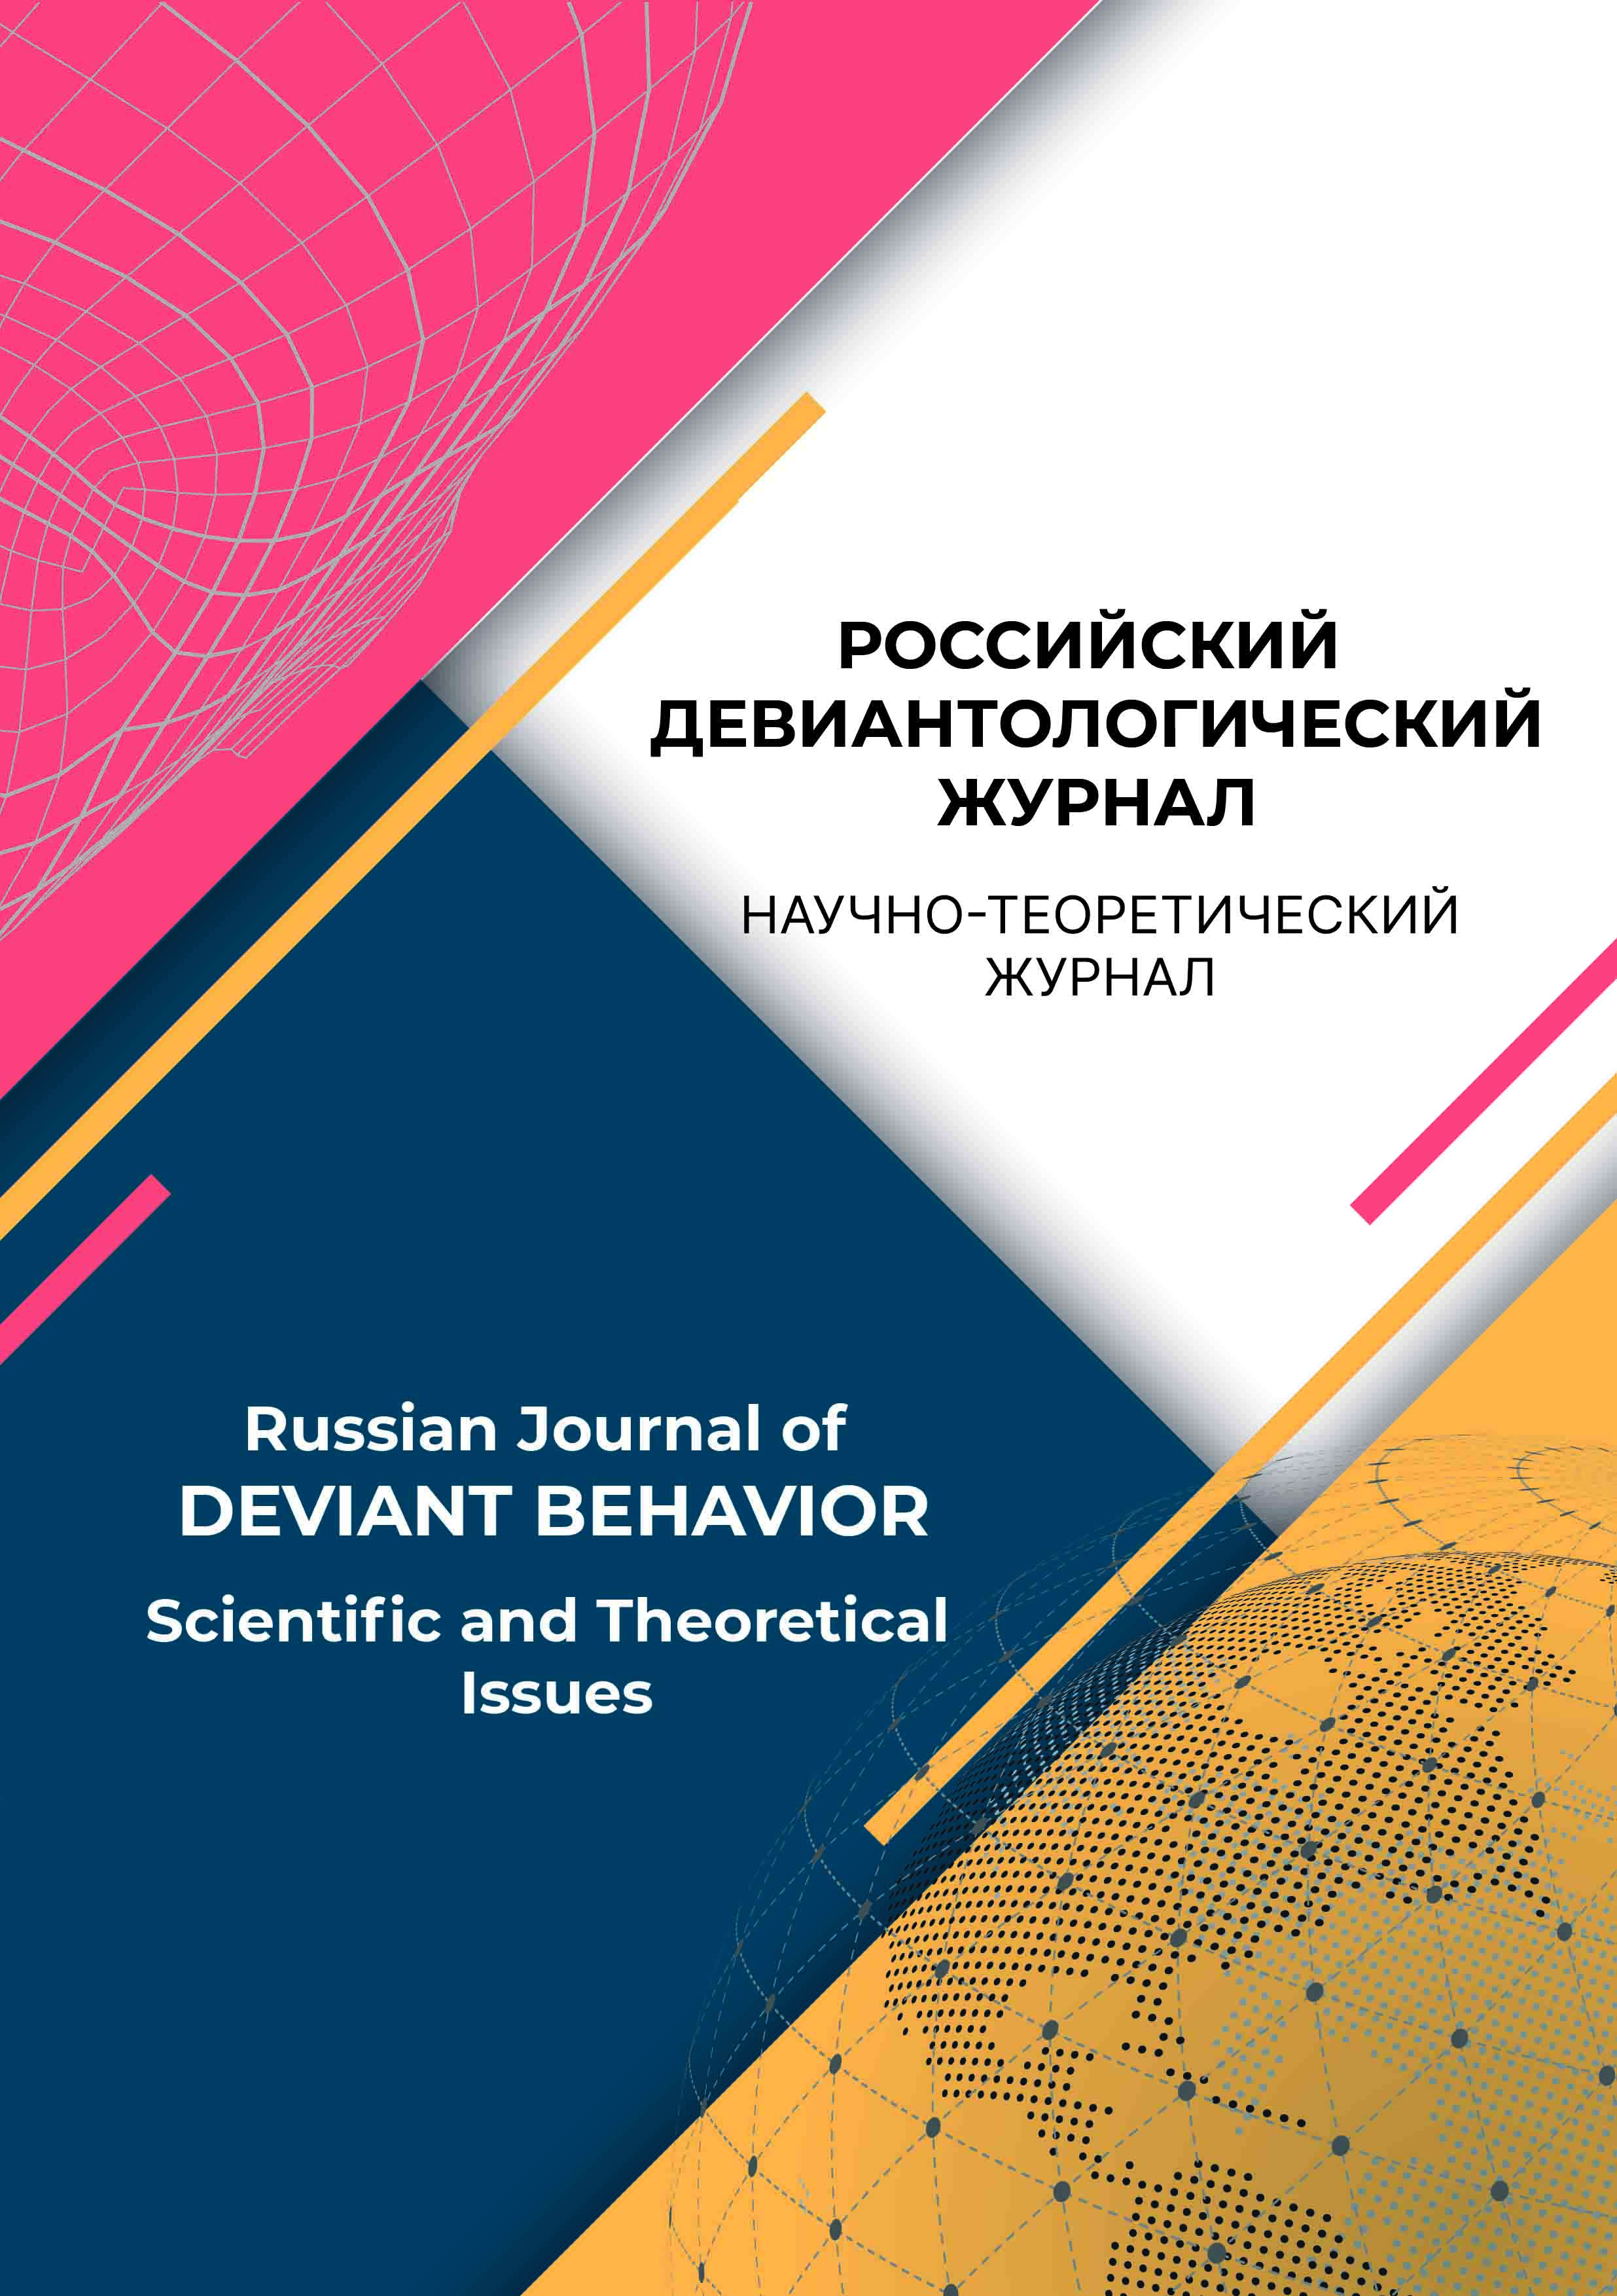             Российский девиантологический журнал
    